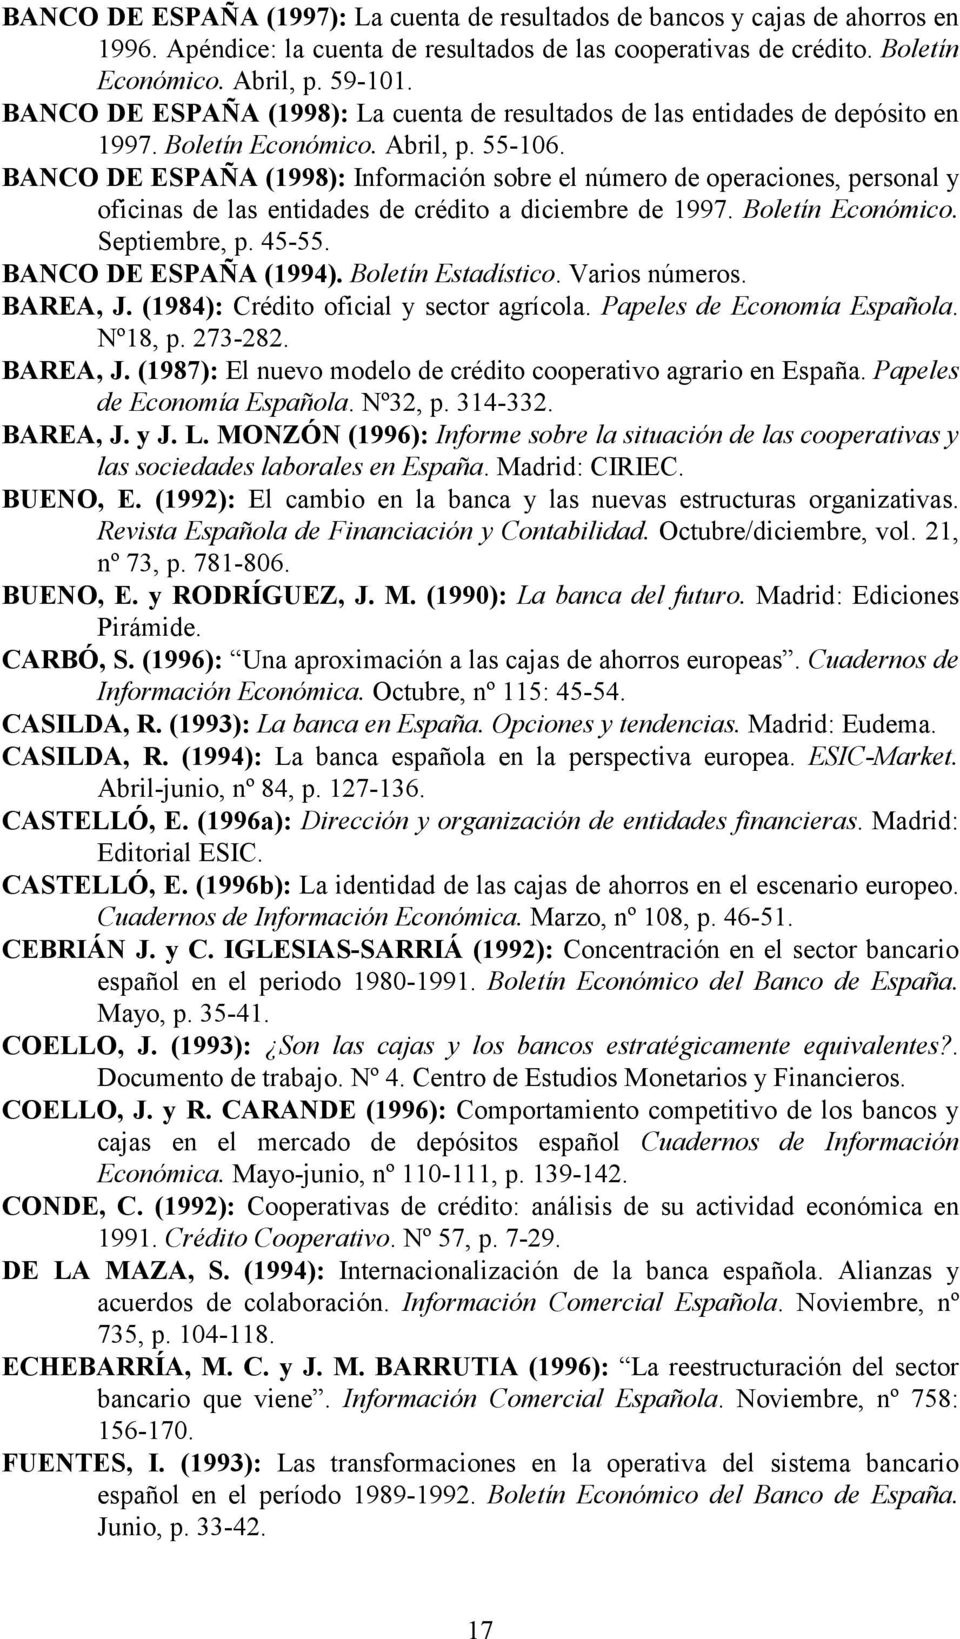 BANCO DE ESPAÑA (1998): Información sobre el número de operaciones, personal y oficinas de las entidades de crédito a diciembre de 1997. Boletín Económico. Septiembre, p. 45-55.